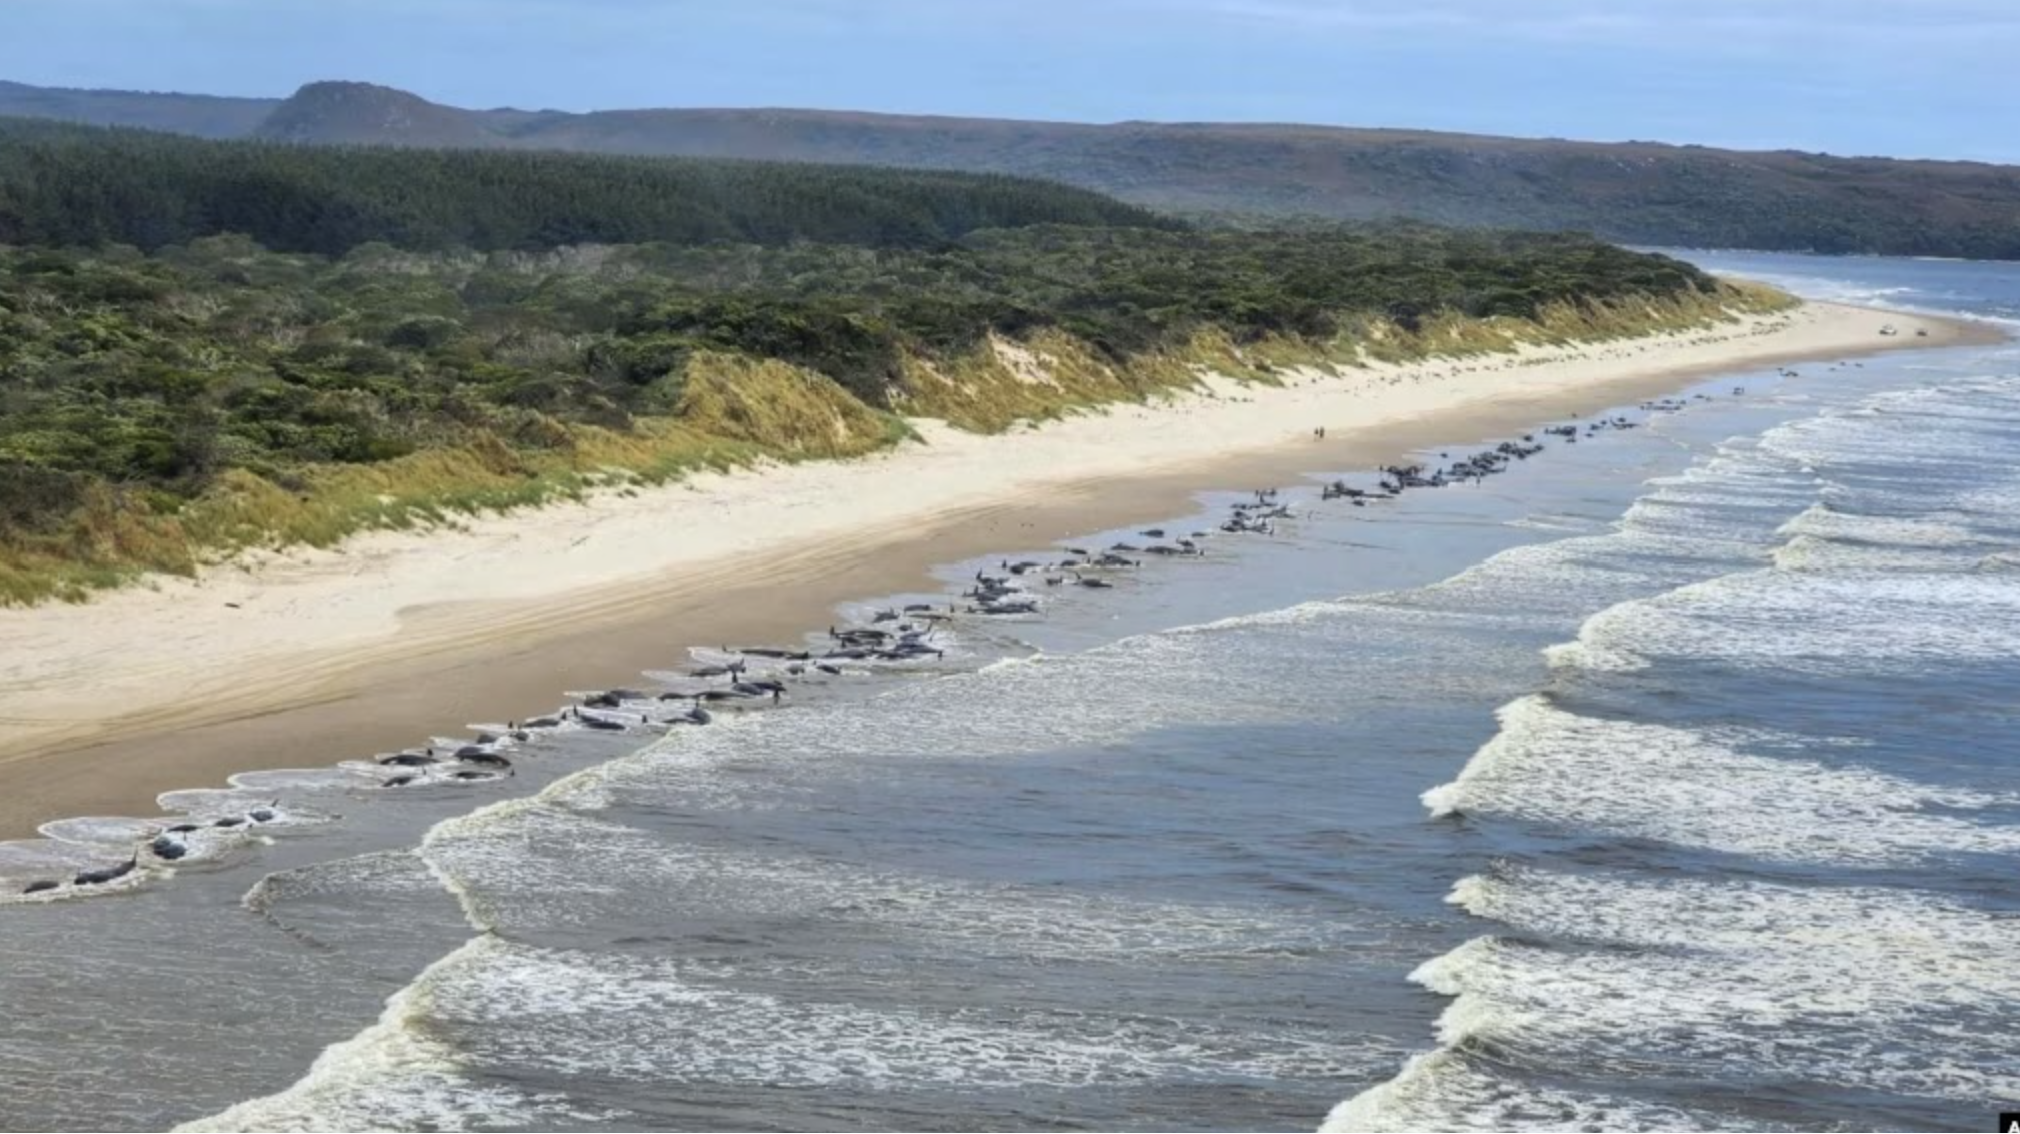 ត្រីបាឡែនជាច្រើនក្បាលជាប់គាំងនៅឆ្នេរសមុទ្រ Ocean Beach នៅកំពង់ផែ Macquarie នៅតំបន់ Tasmania នៃប្រទេសអូស្ត្រាលី កាលពីថ្ងៃទី ២១ ខែកញ្ញា ឆ្នាំ ២០២២។